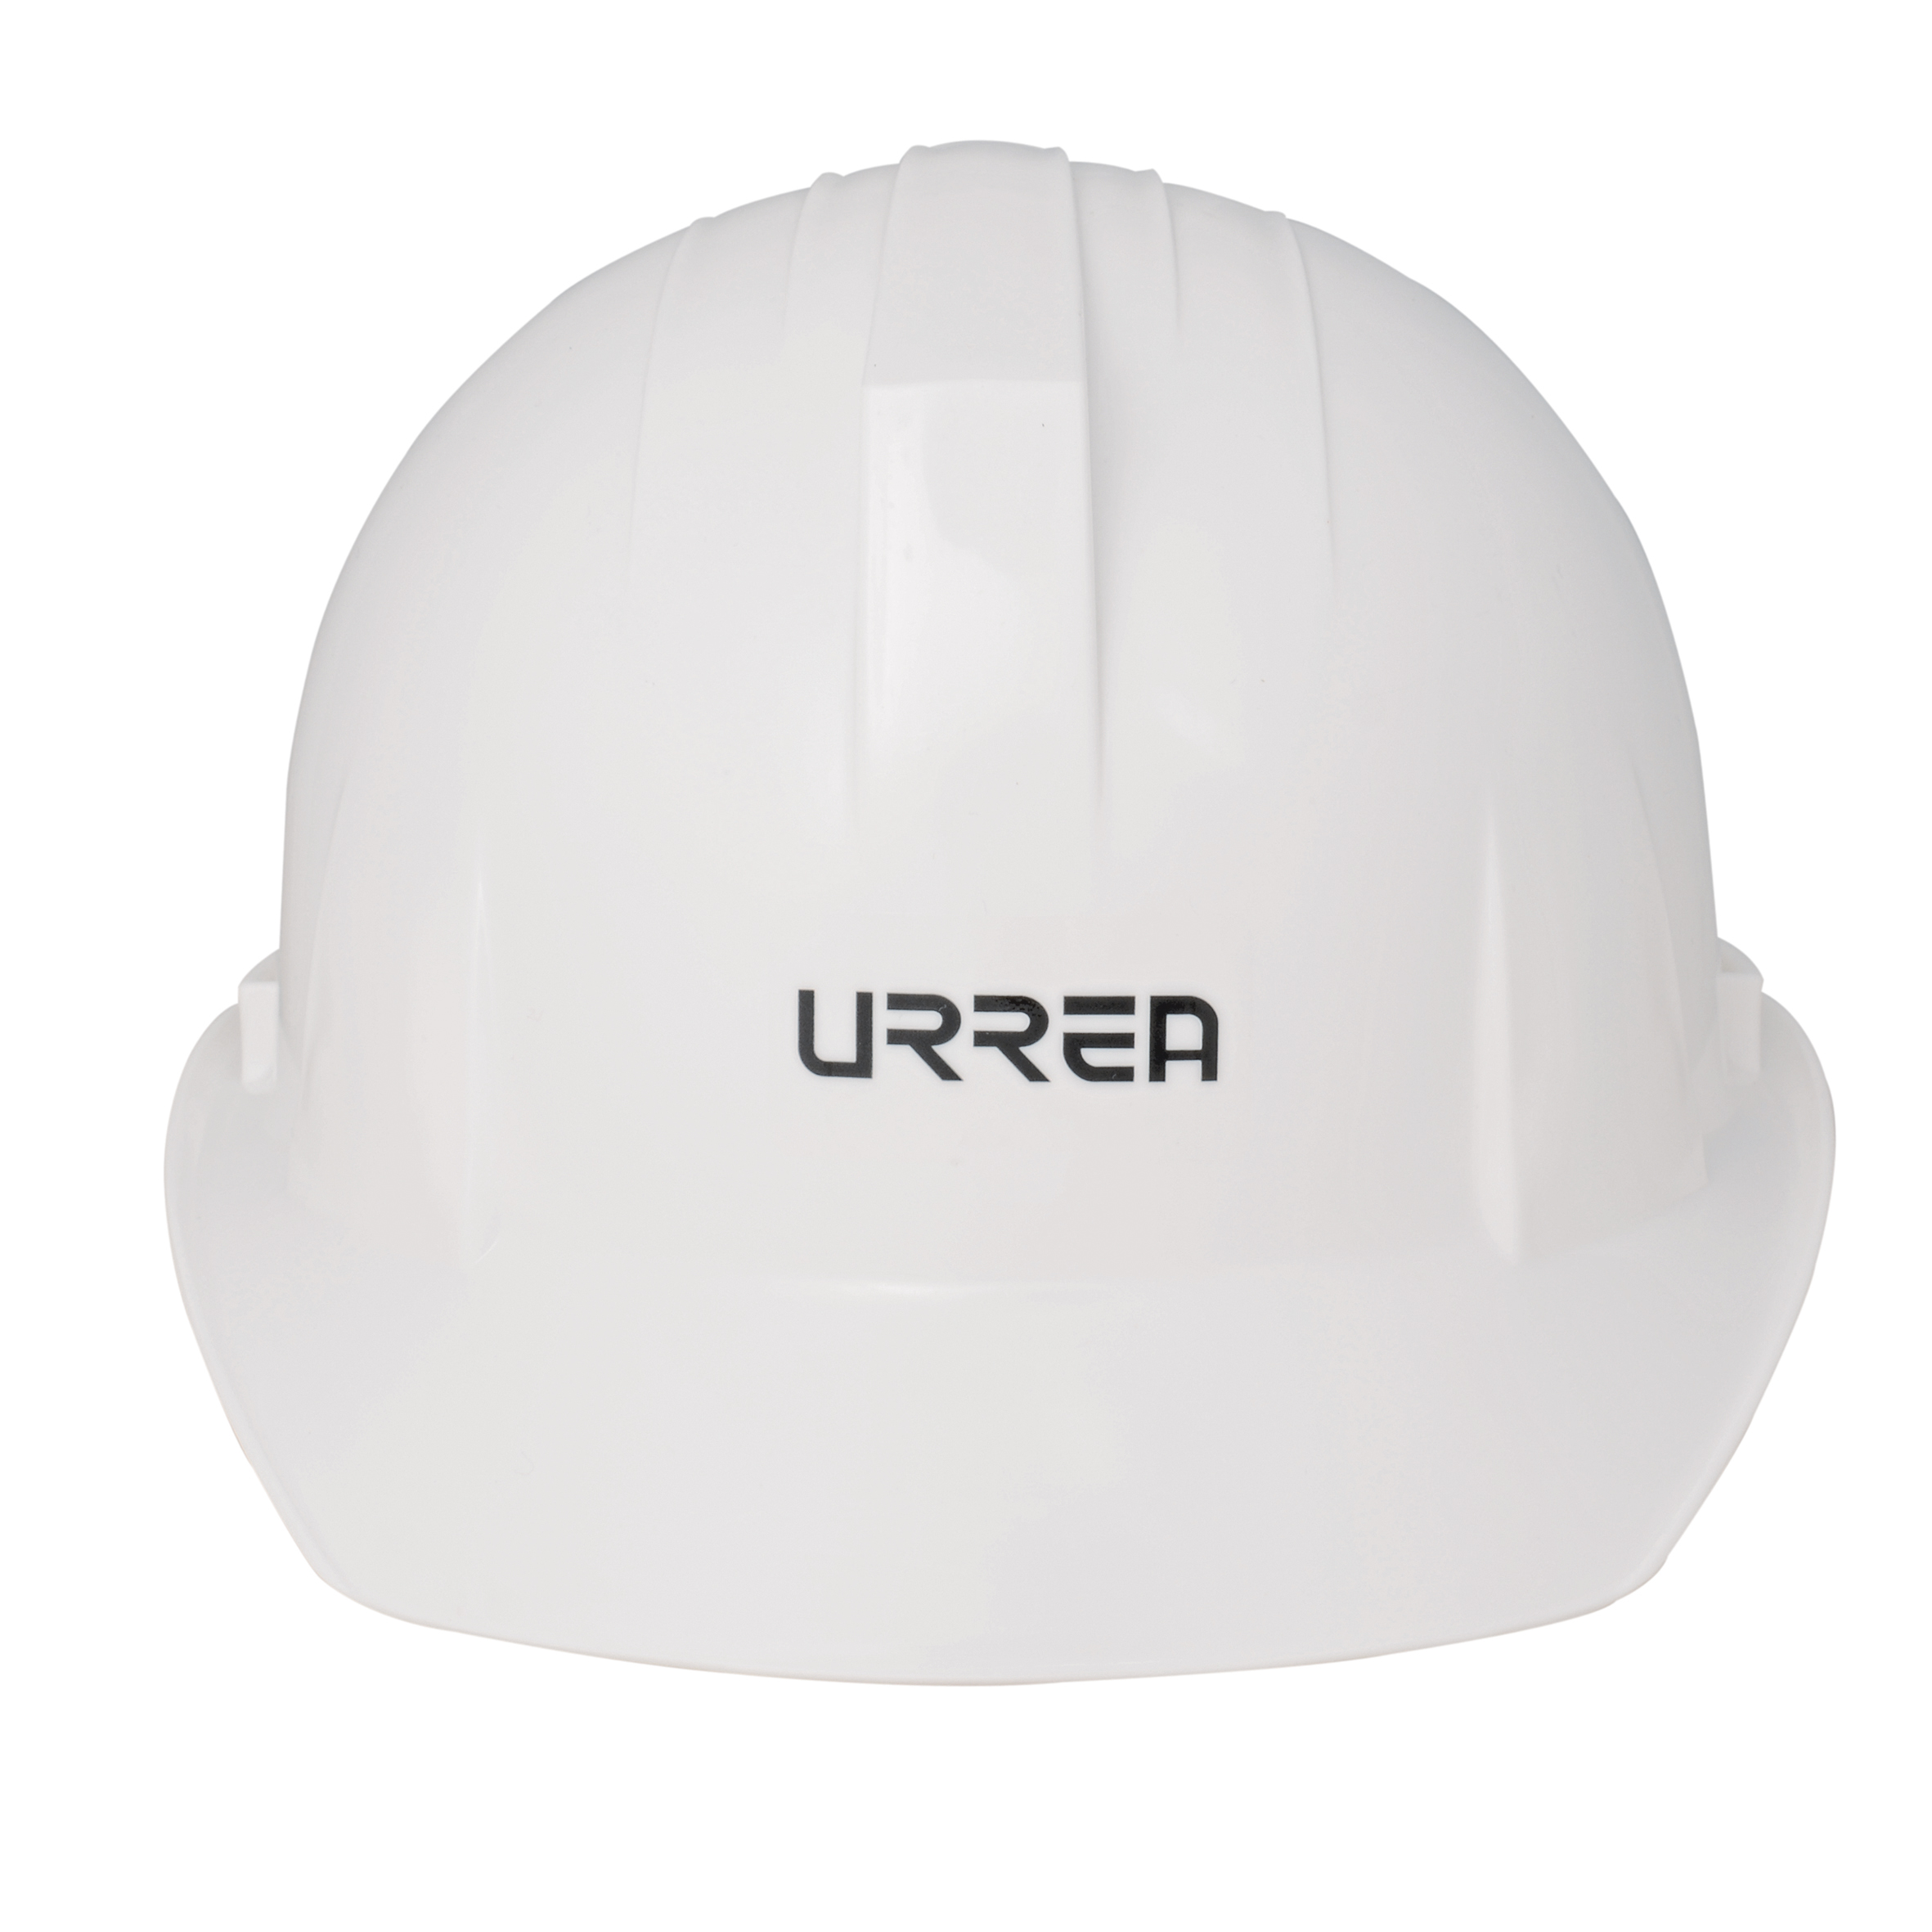 Imagen para Casco de seguridad con ajustede matraca color blanco de Grupo Urrea